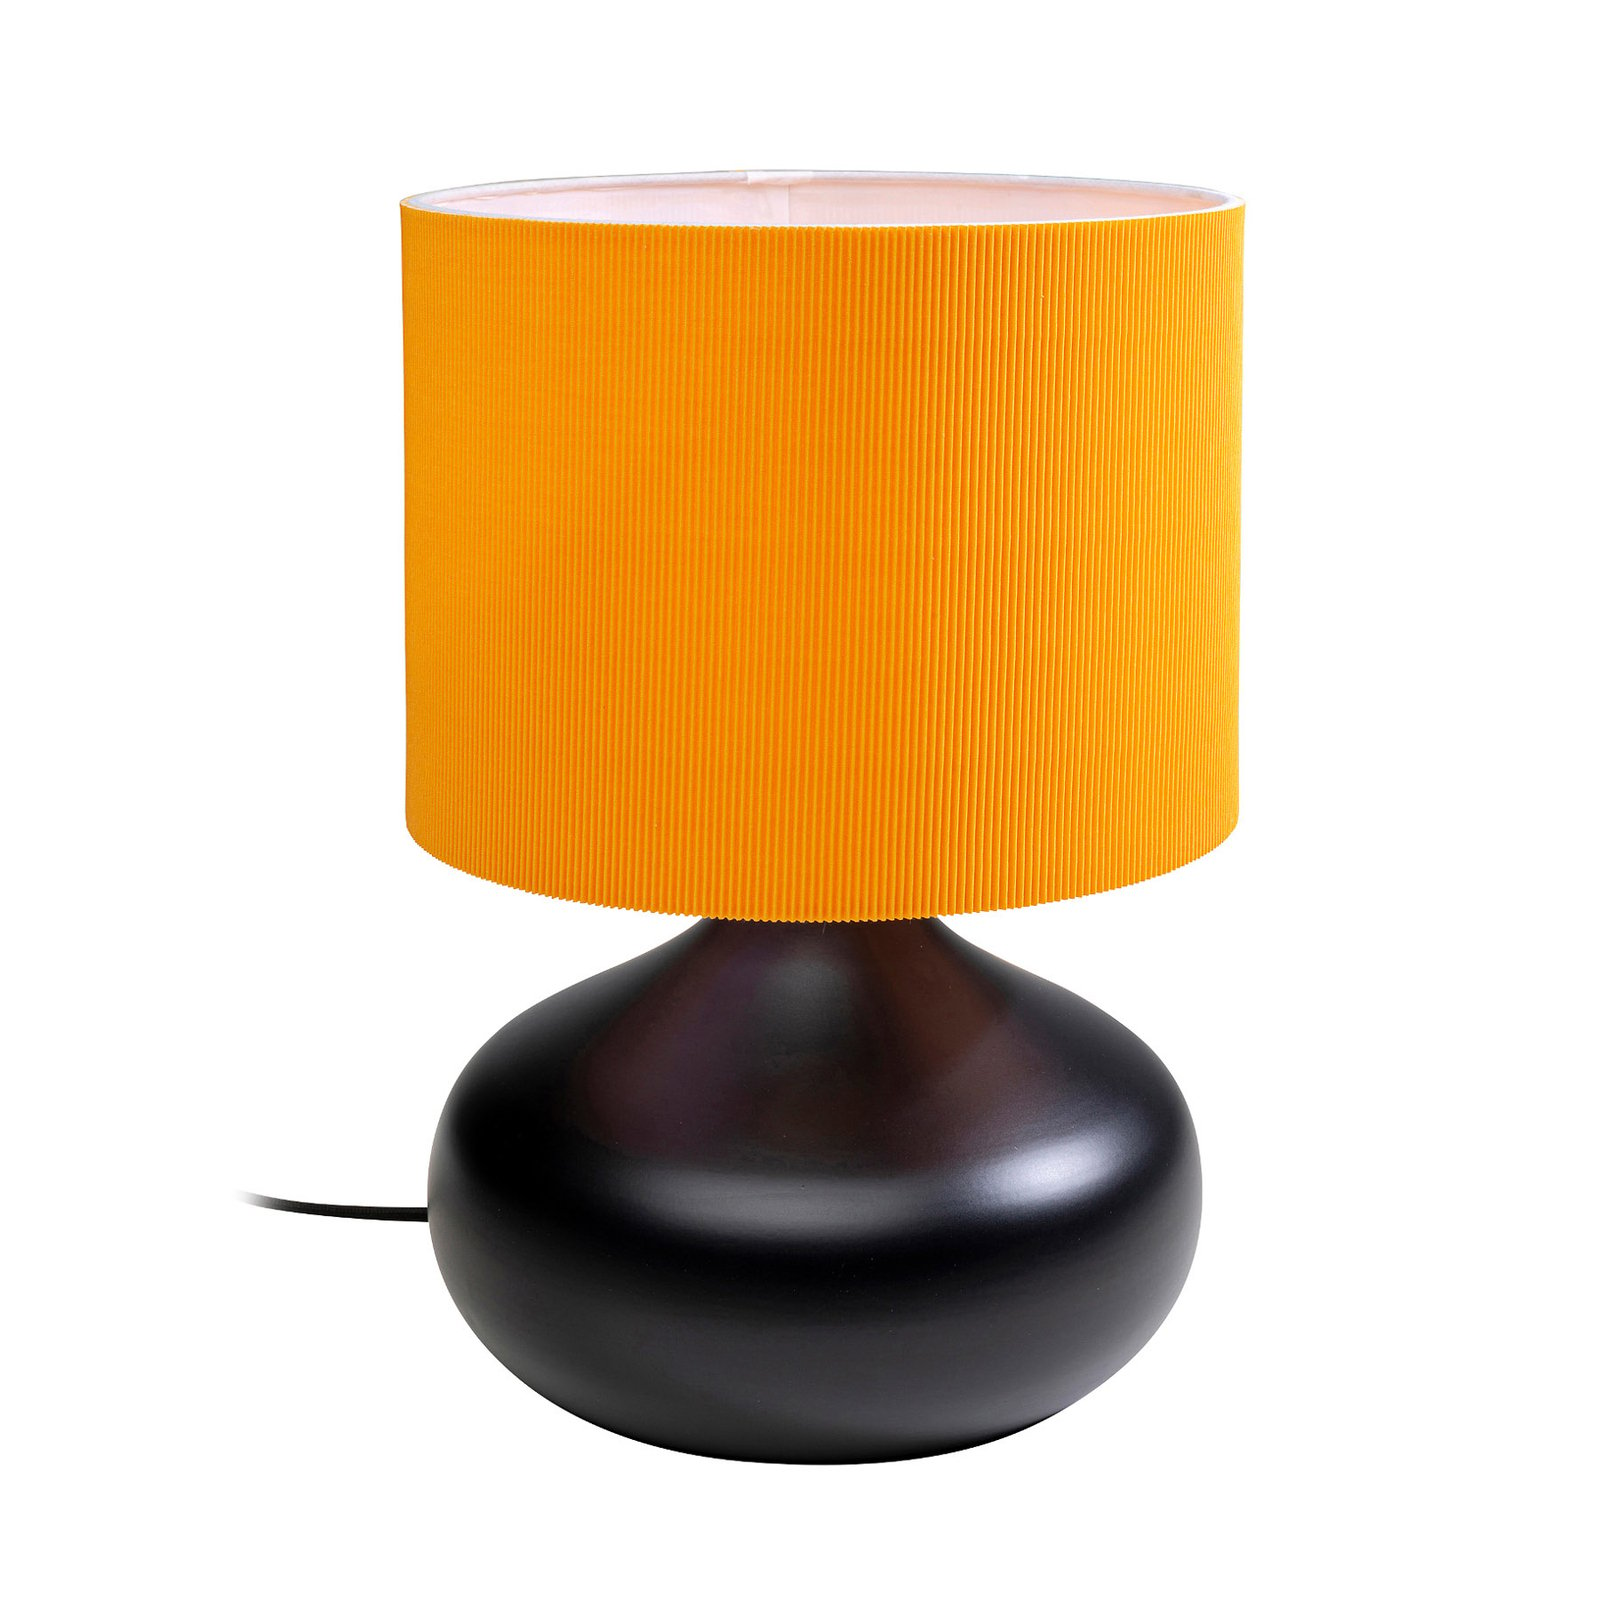 KARE Hit Parade bordslampa, orange/svart